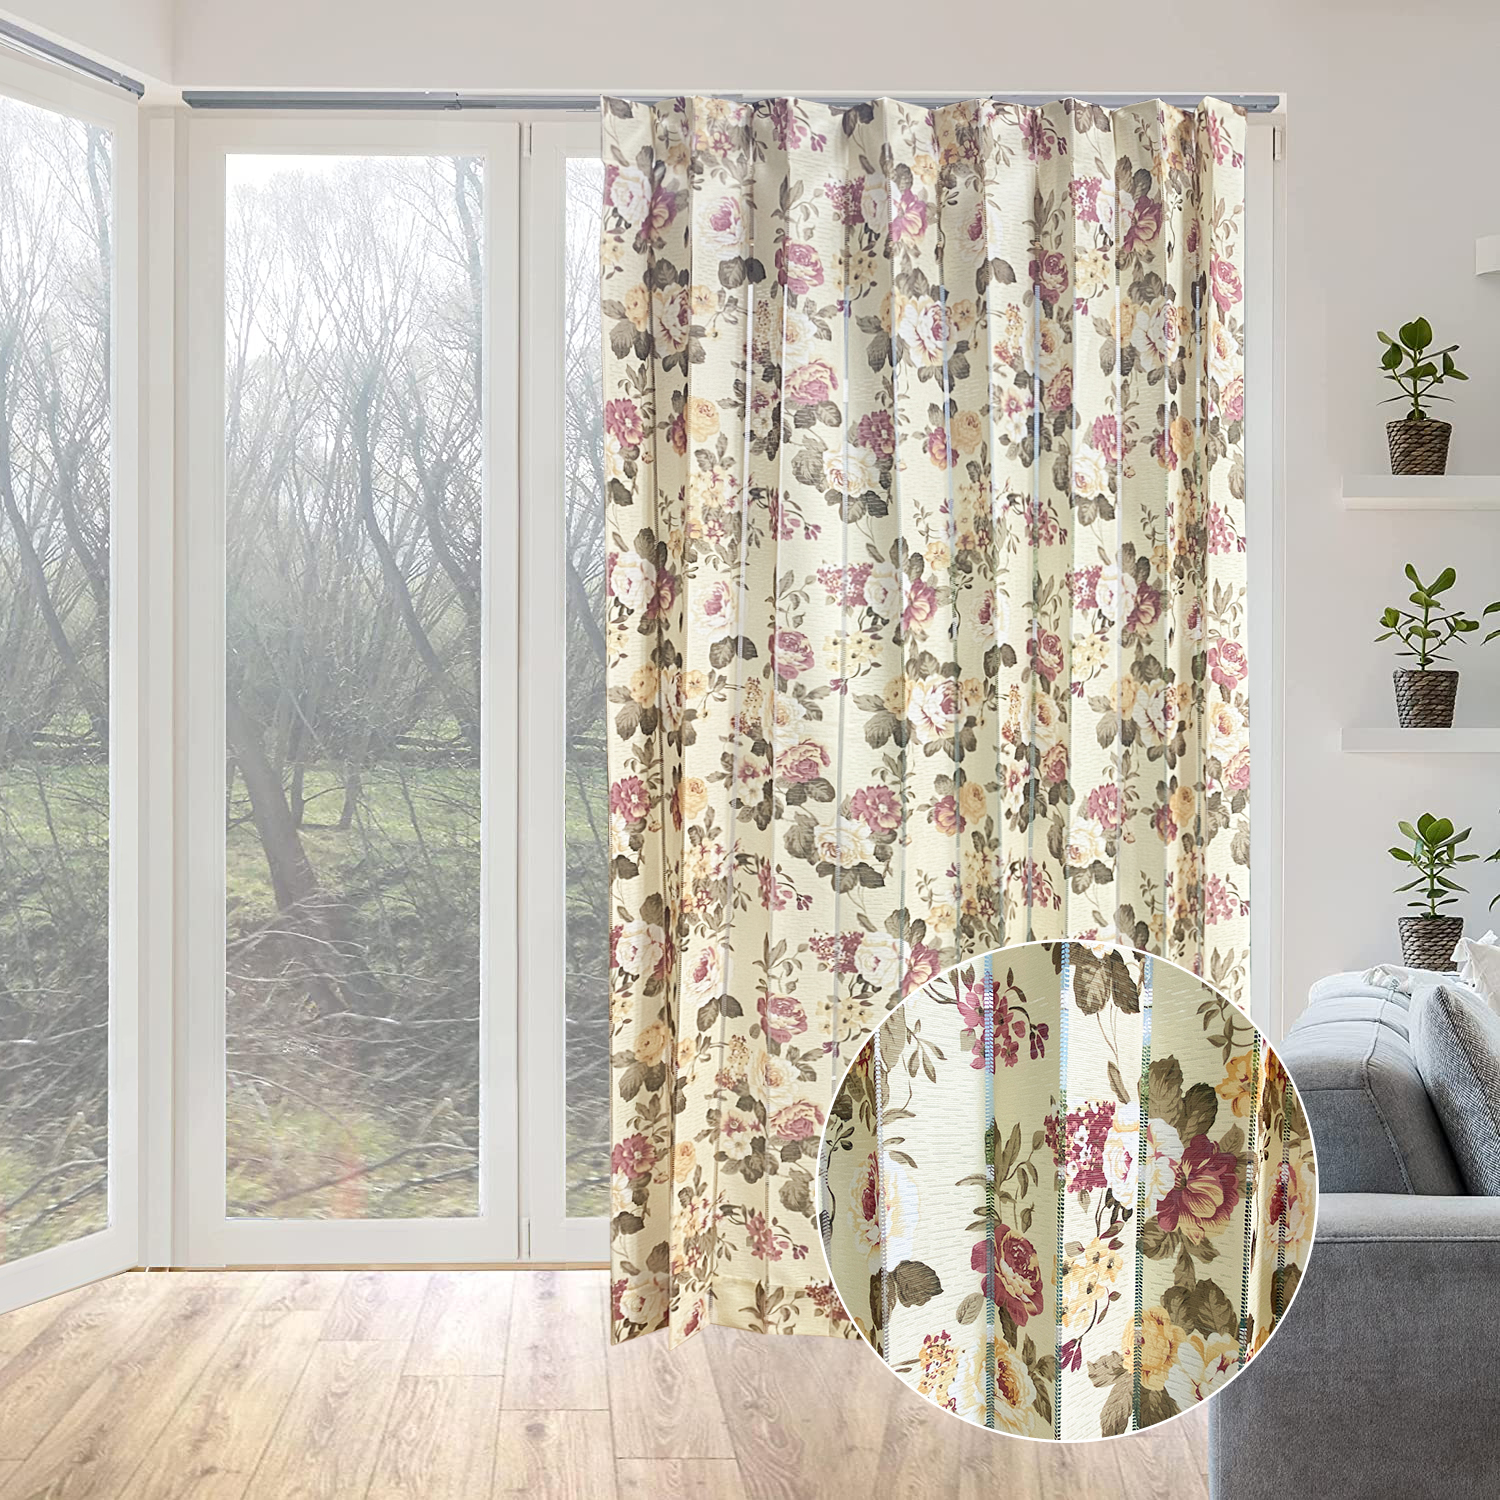 Impressão divisor de cortina de janela blackout europeu Blossoms cortina persianas verticais tecido de cortina